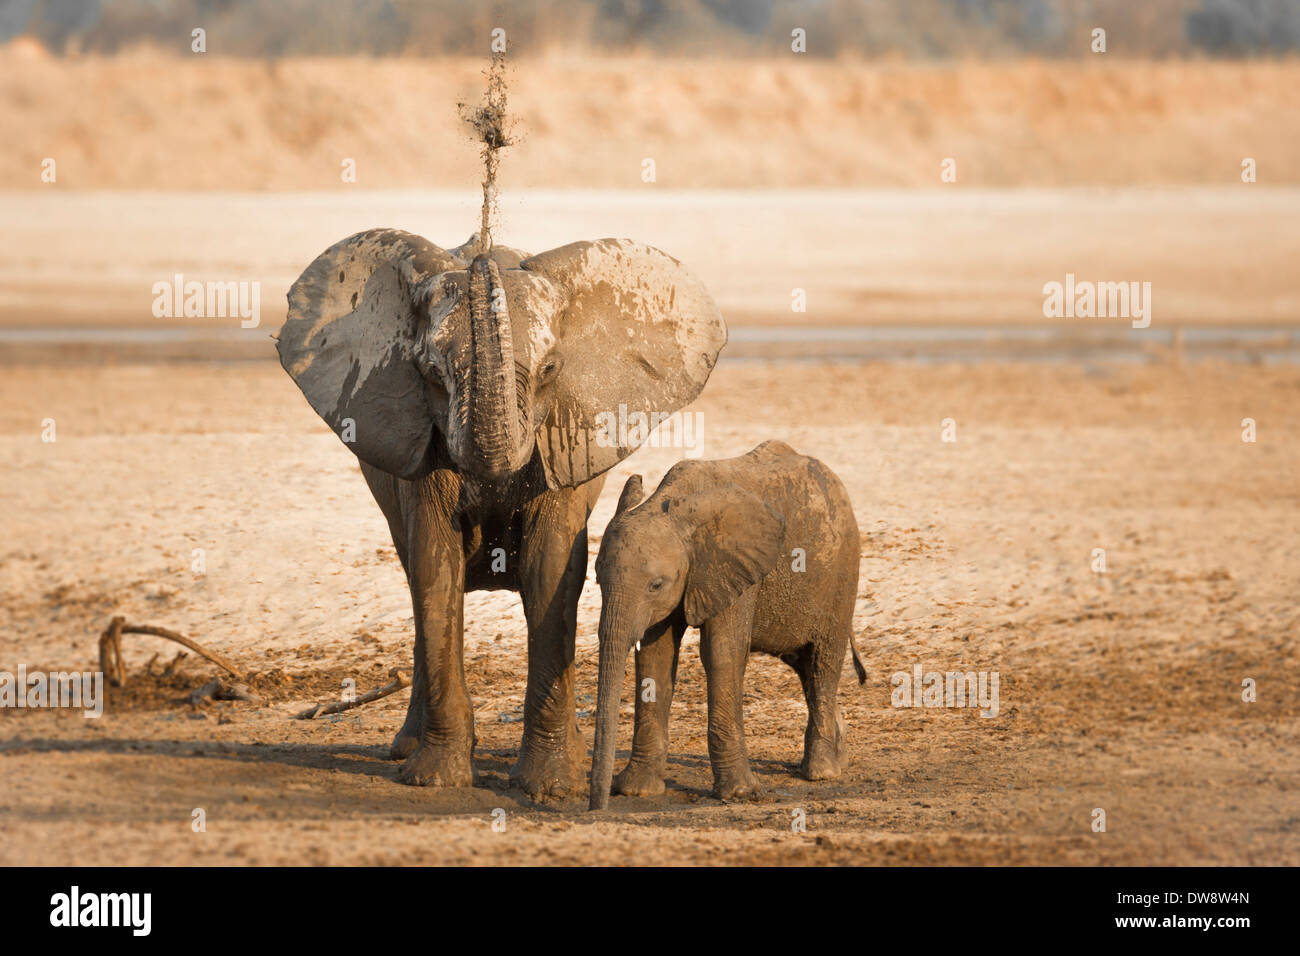 Zambia Sud Luangwa National Park, dell' elefante africano (Loxodonta africana) la spruzzatura di fango con il suo tronco. Foto Stock